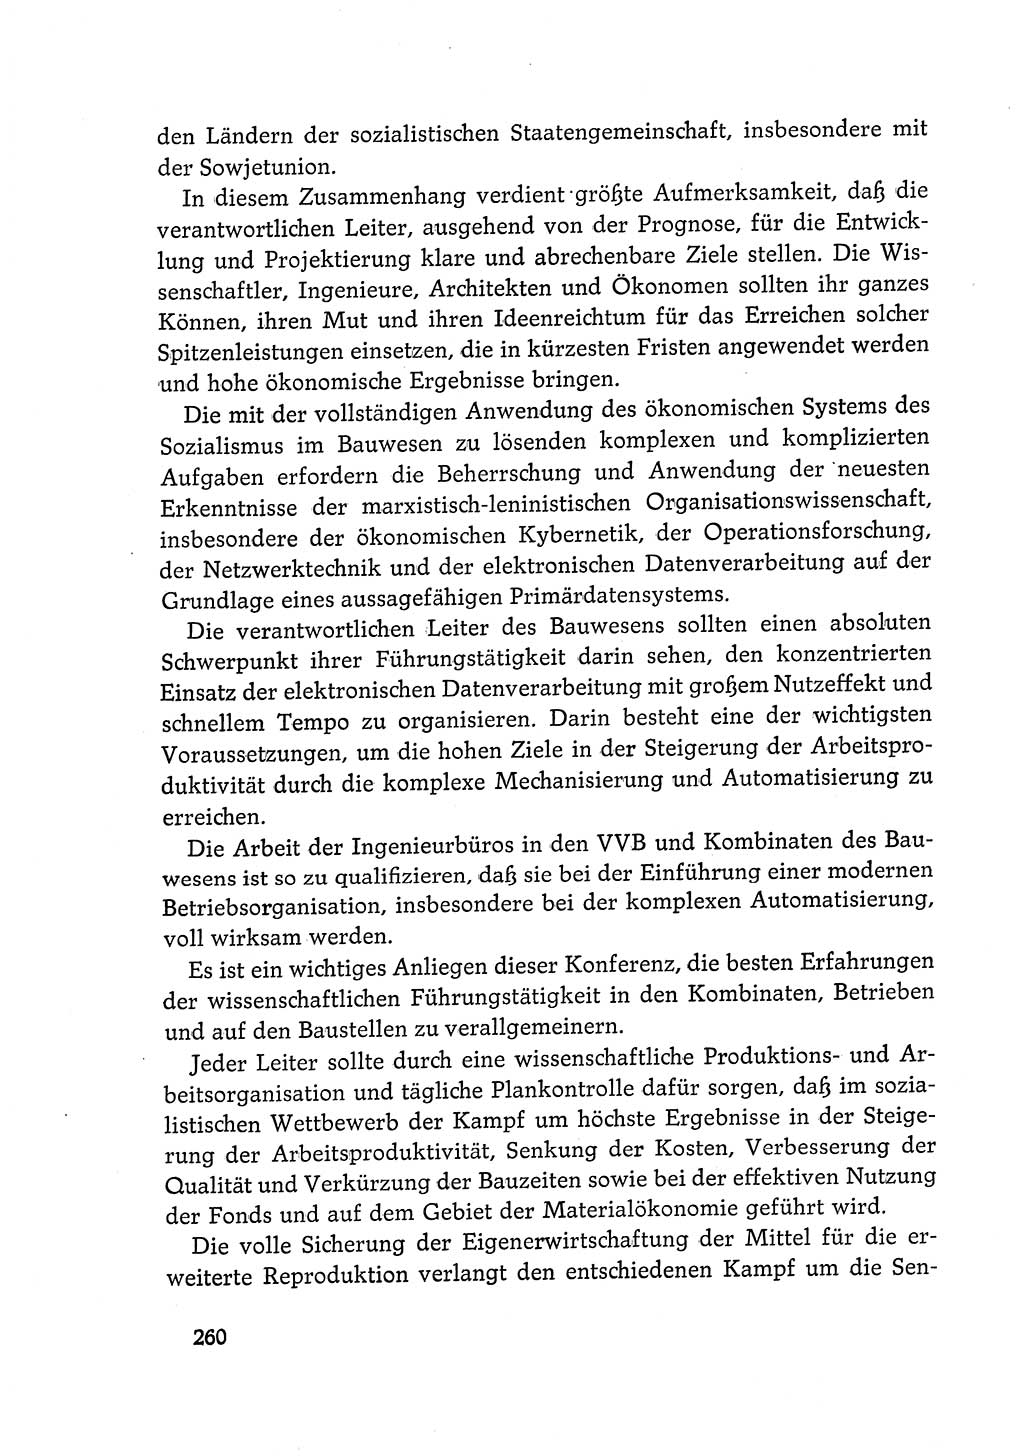 Dokumente der Sozialistischen Einheitspartei Deutschlands (SED) [Deutsche Demokratische Republik (DDR)] 1968-1969, Seite 260 (Dok. SED DDR 1968-1969, S. 260)